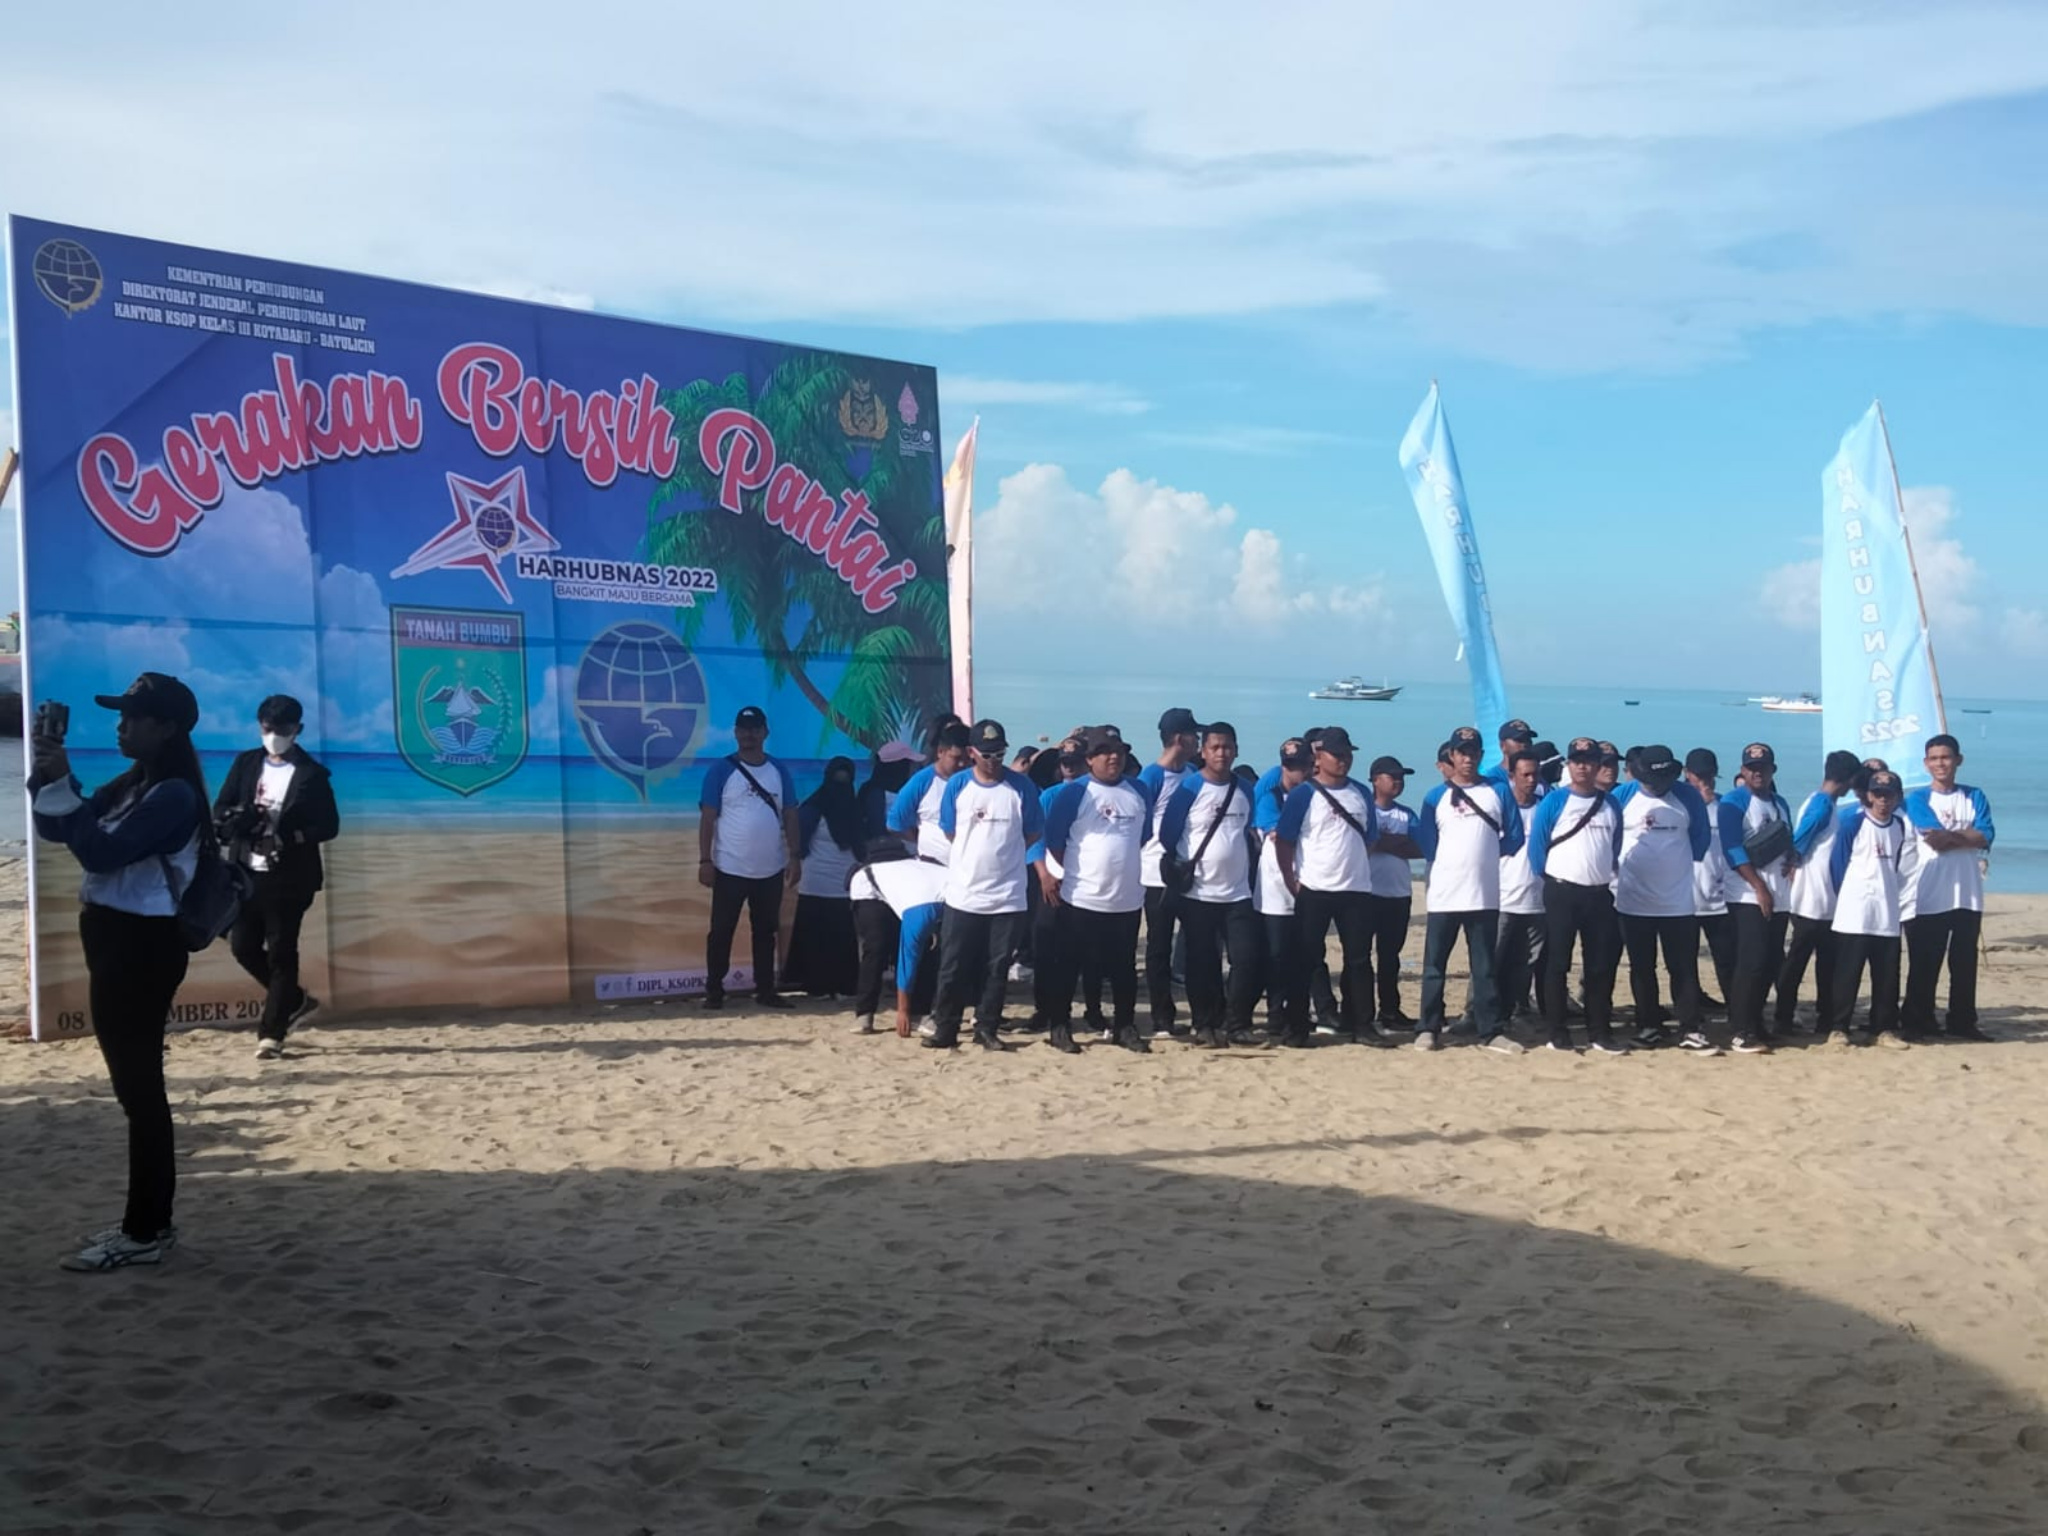 (Apri) Gerakan Bersih Pantai Bersama Peringati Harhubnas